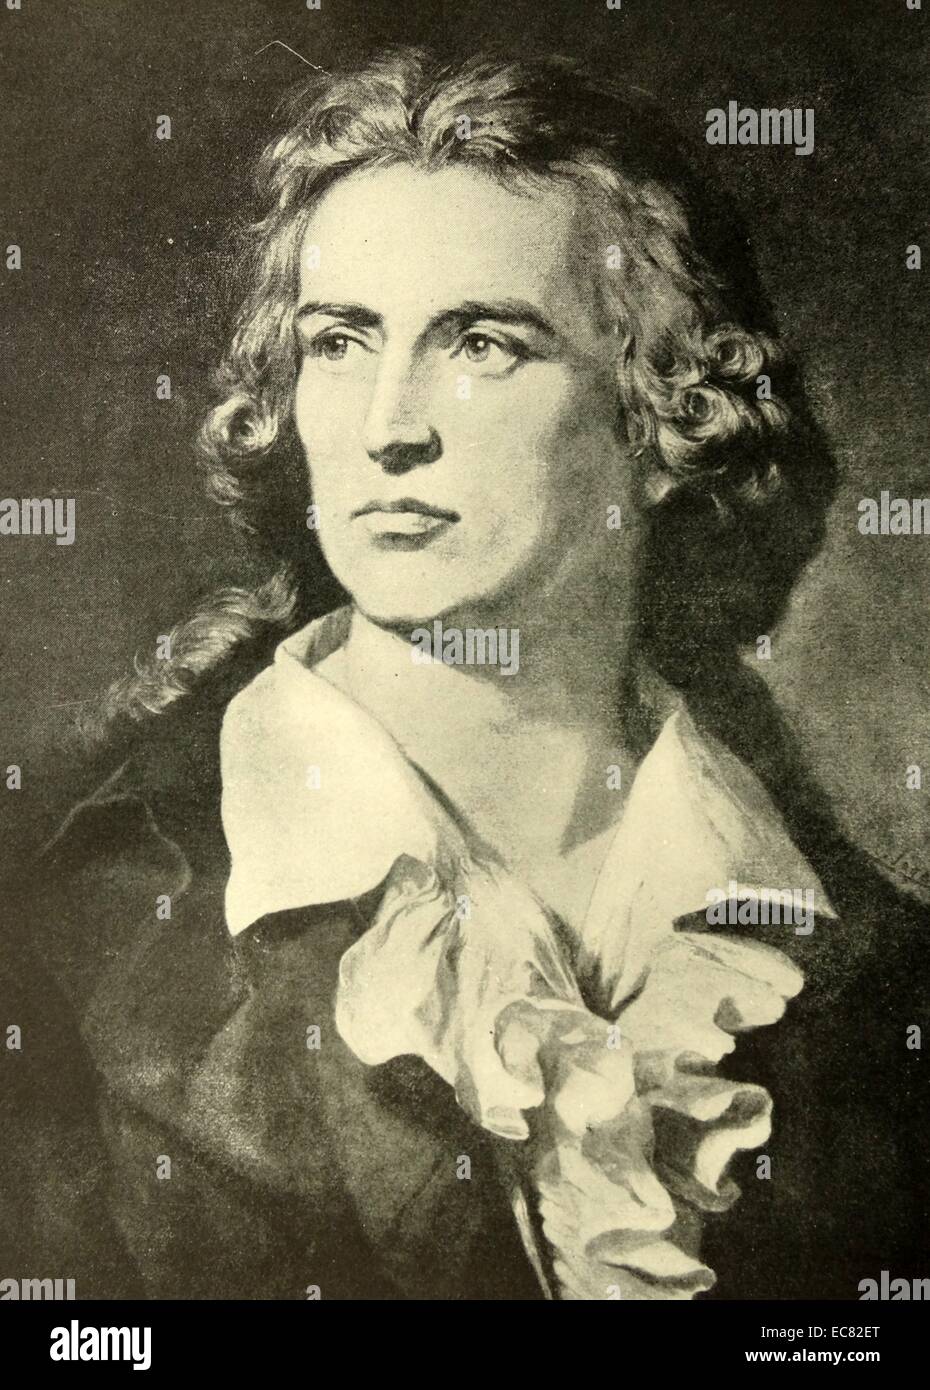 Ritratto di Friedrich Schiller (1759-1805) poeta tedesco, filosofo, storico e drammaturgo. Datata 1793 Foto Stock